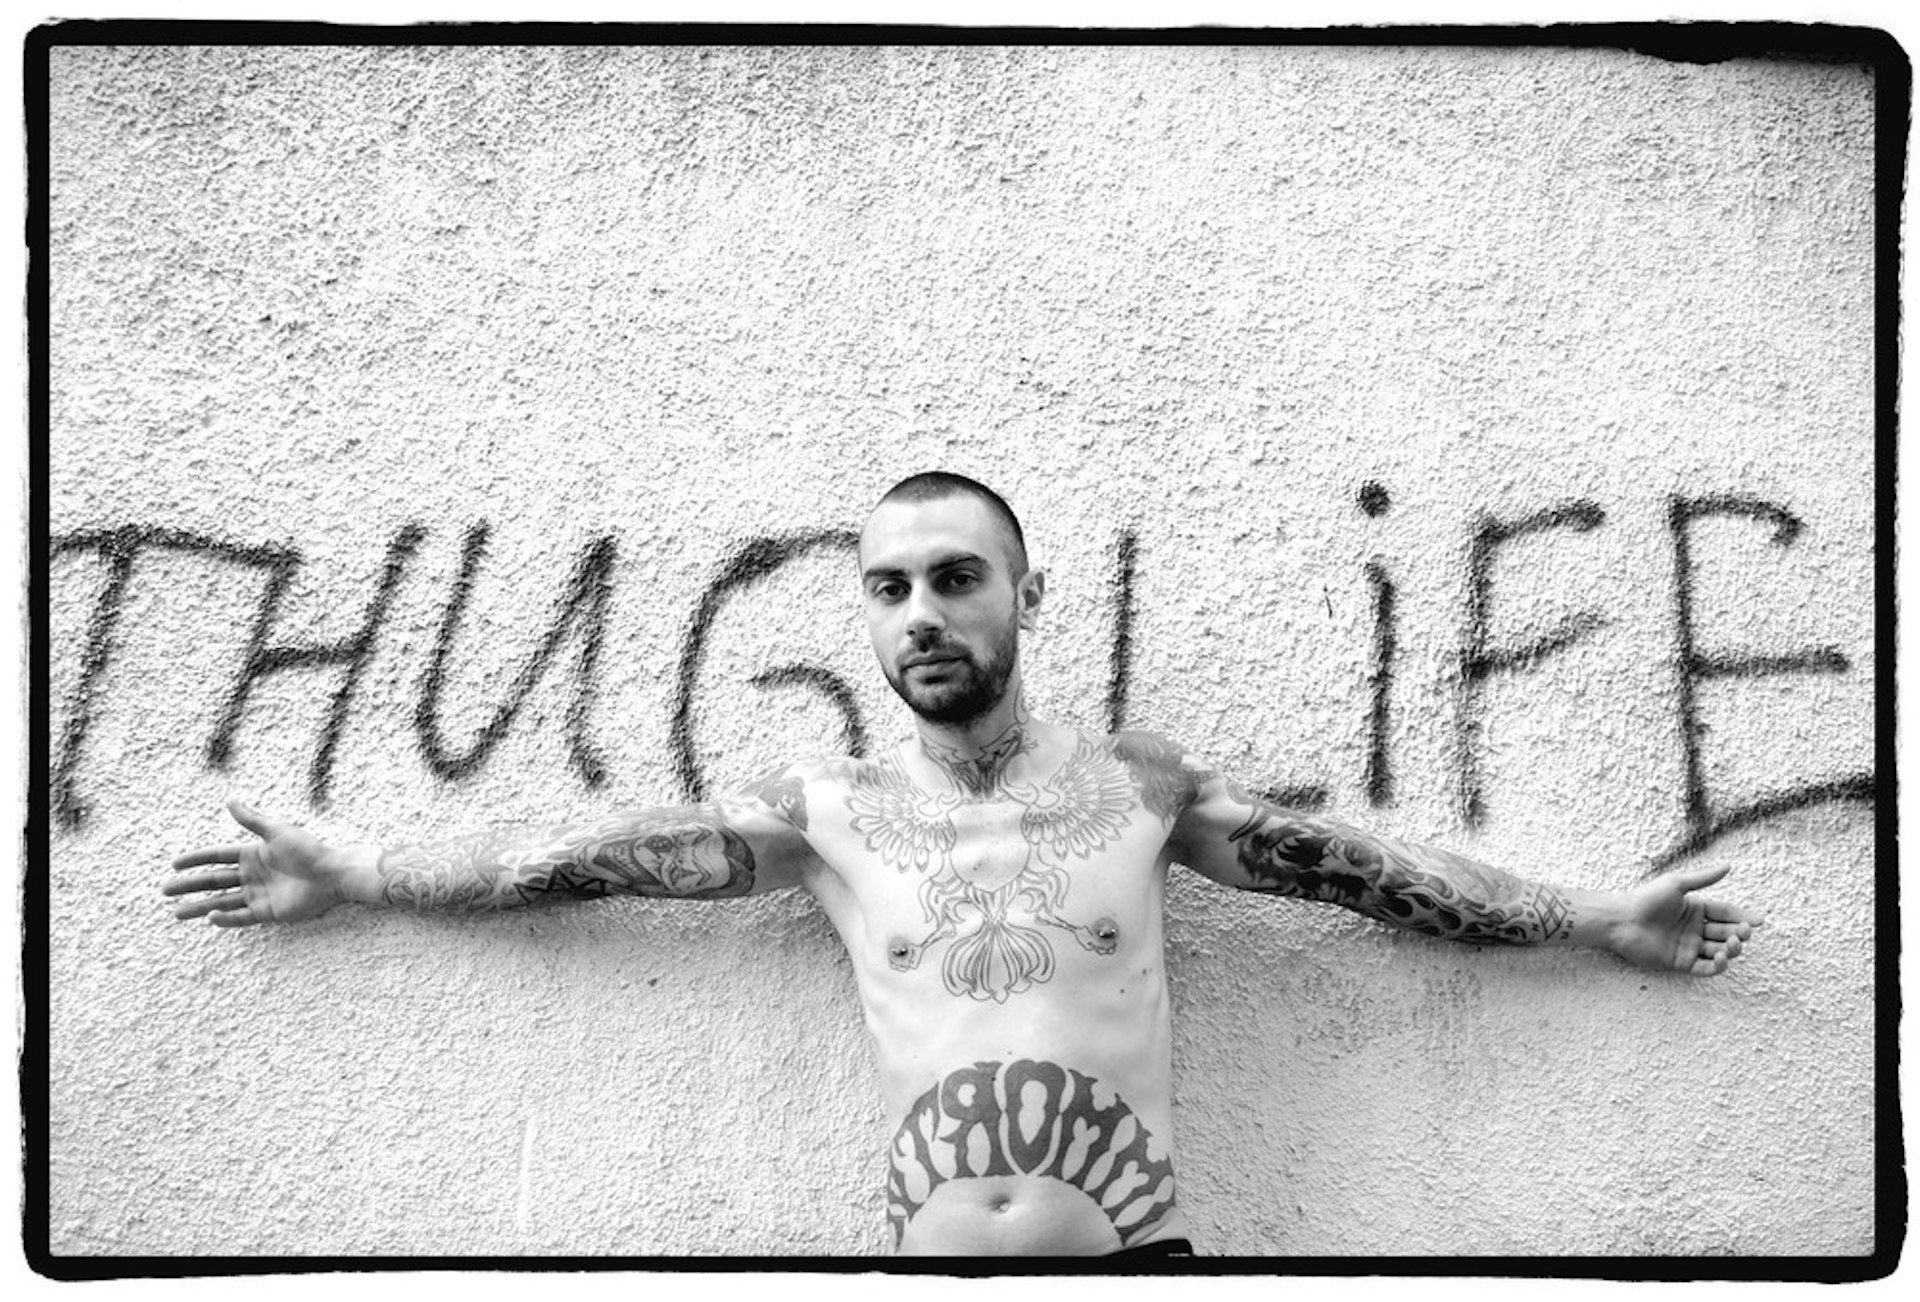 Thug+life+border